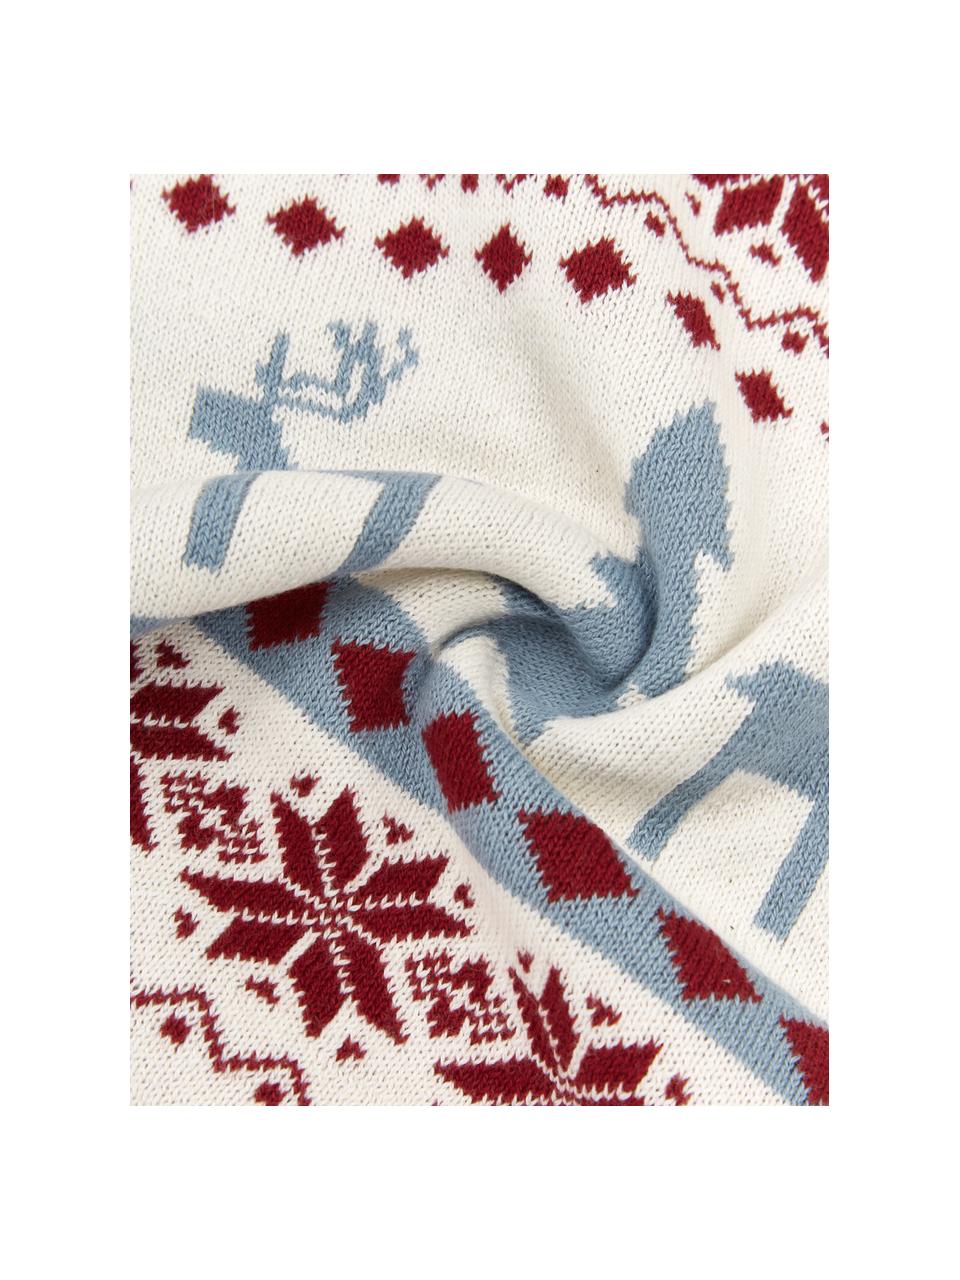 Strick-Kissenhülle David mit winterlichem Muster, 100% Baumwolle, Bunt, B 40 x L 40 cm